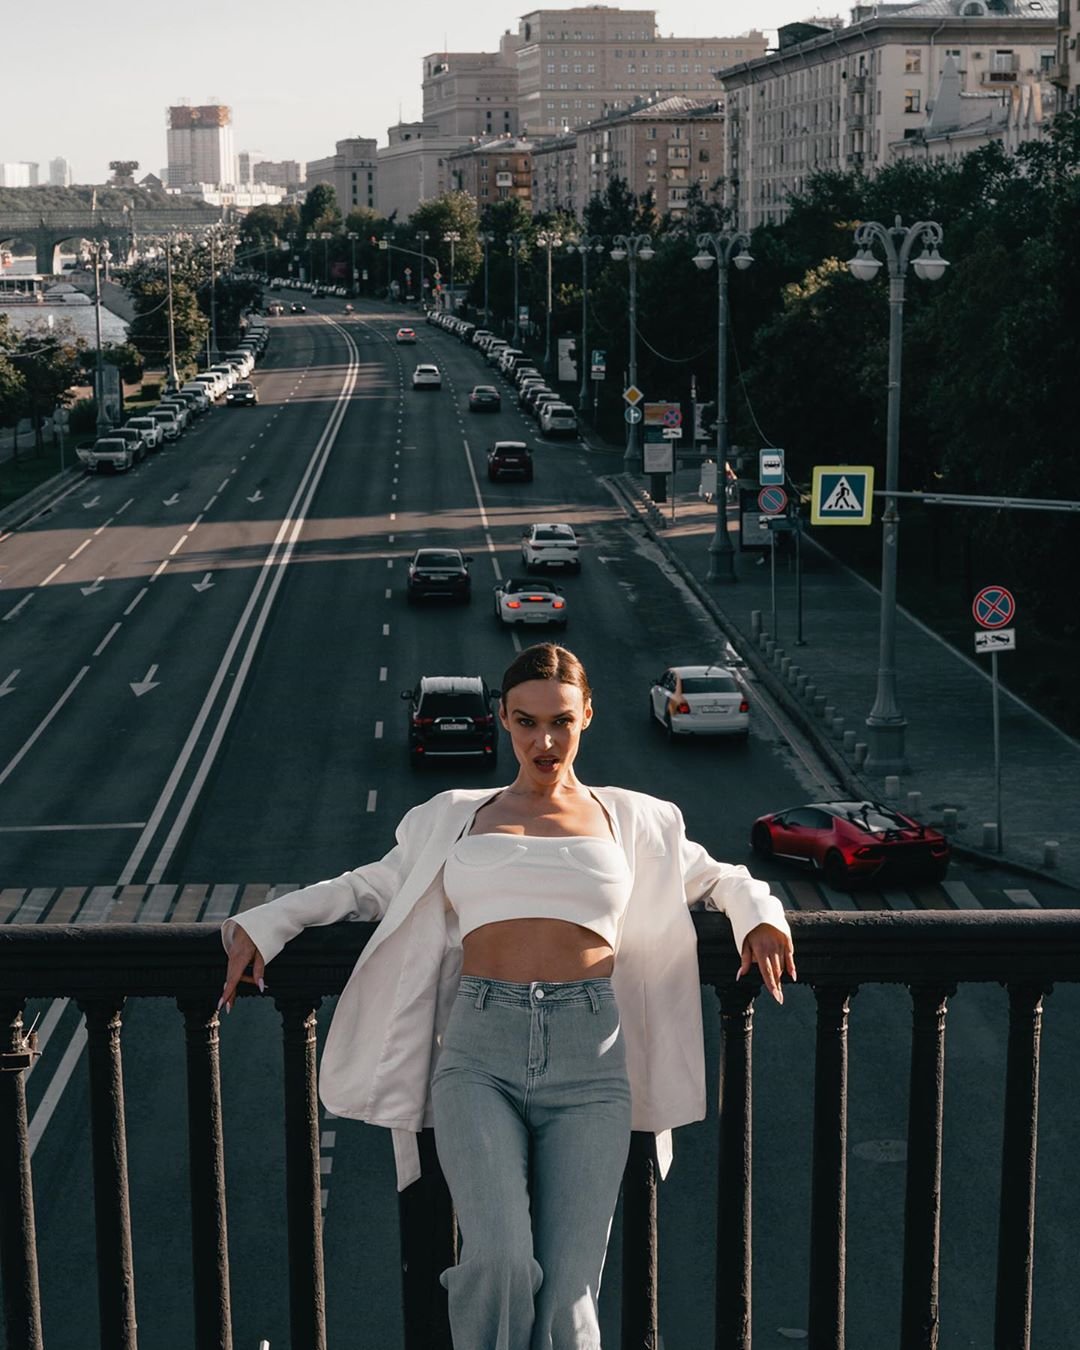 Алёна Водонаева подчеркнула красоту груди интересным белым топом